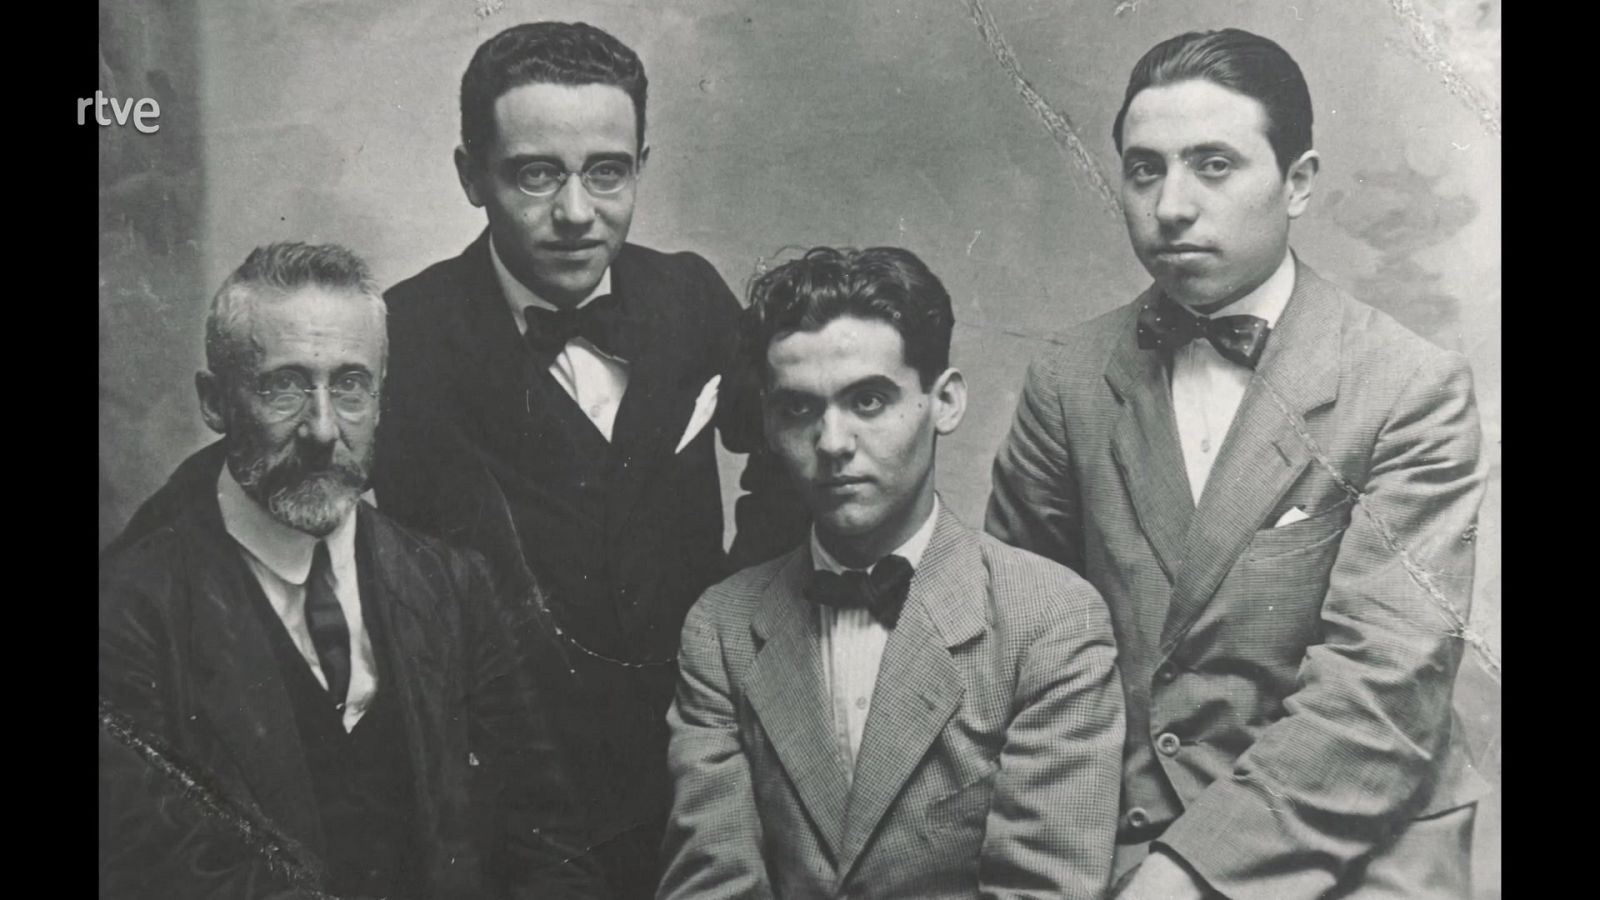 Imprescindibles relata el momento en que Antonio Machado conoció a Federico García Lorca